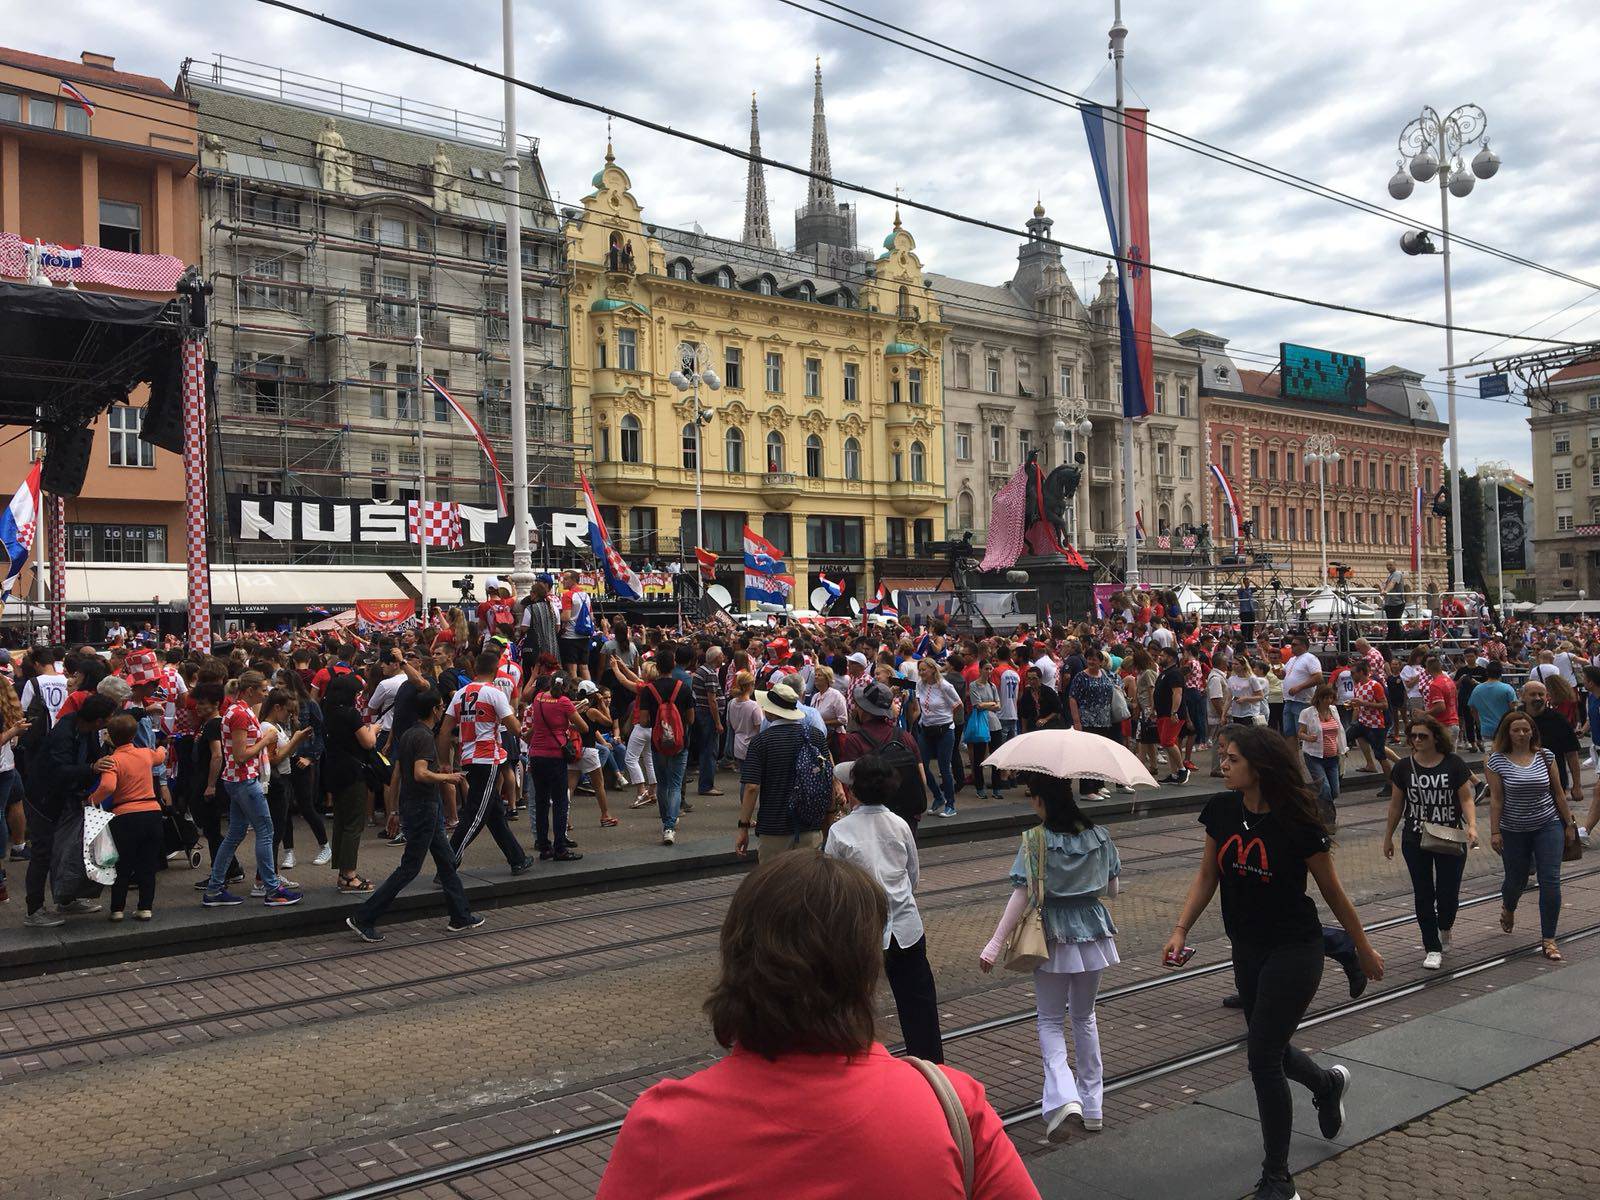 Za povijest! Vatrene u Zagrebu dočekalo čak pola milijuna ljudi